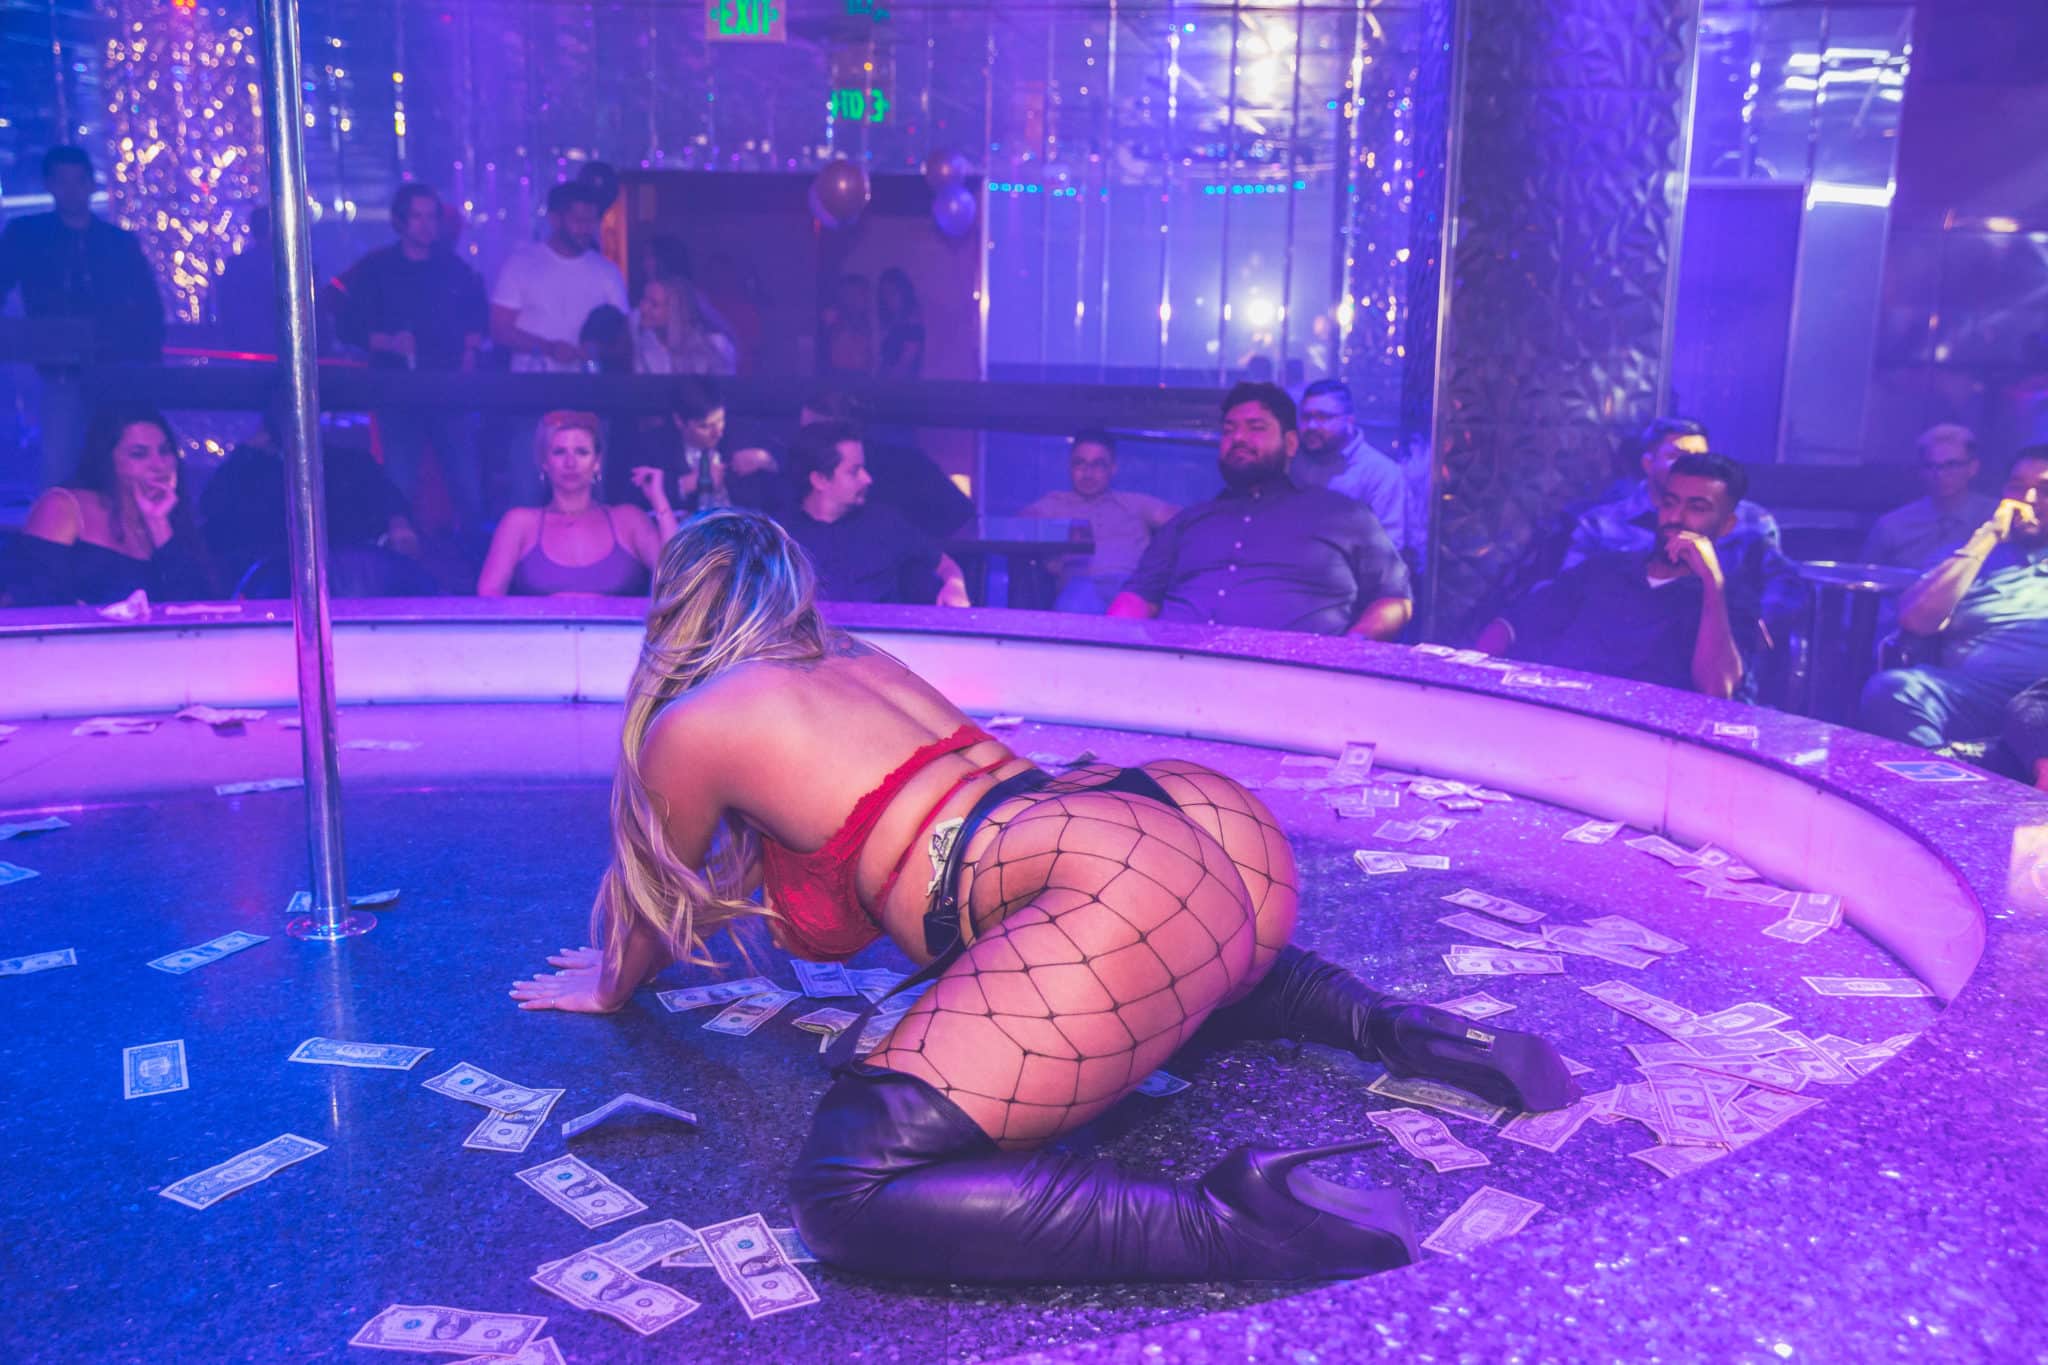 2048px x 1365px - Full Nude Vs Full Bar Strip Clubs | Larry Flynt's Hustler Club